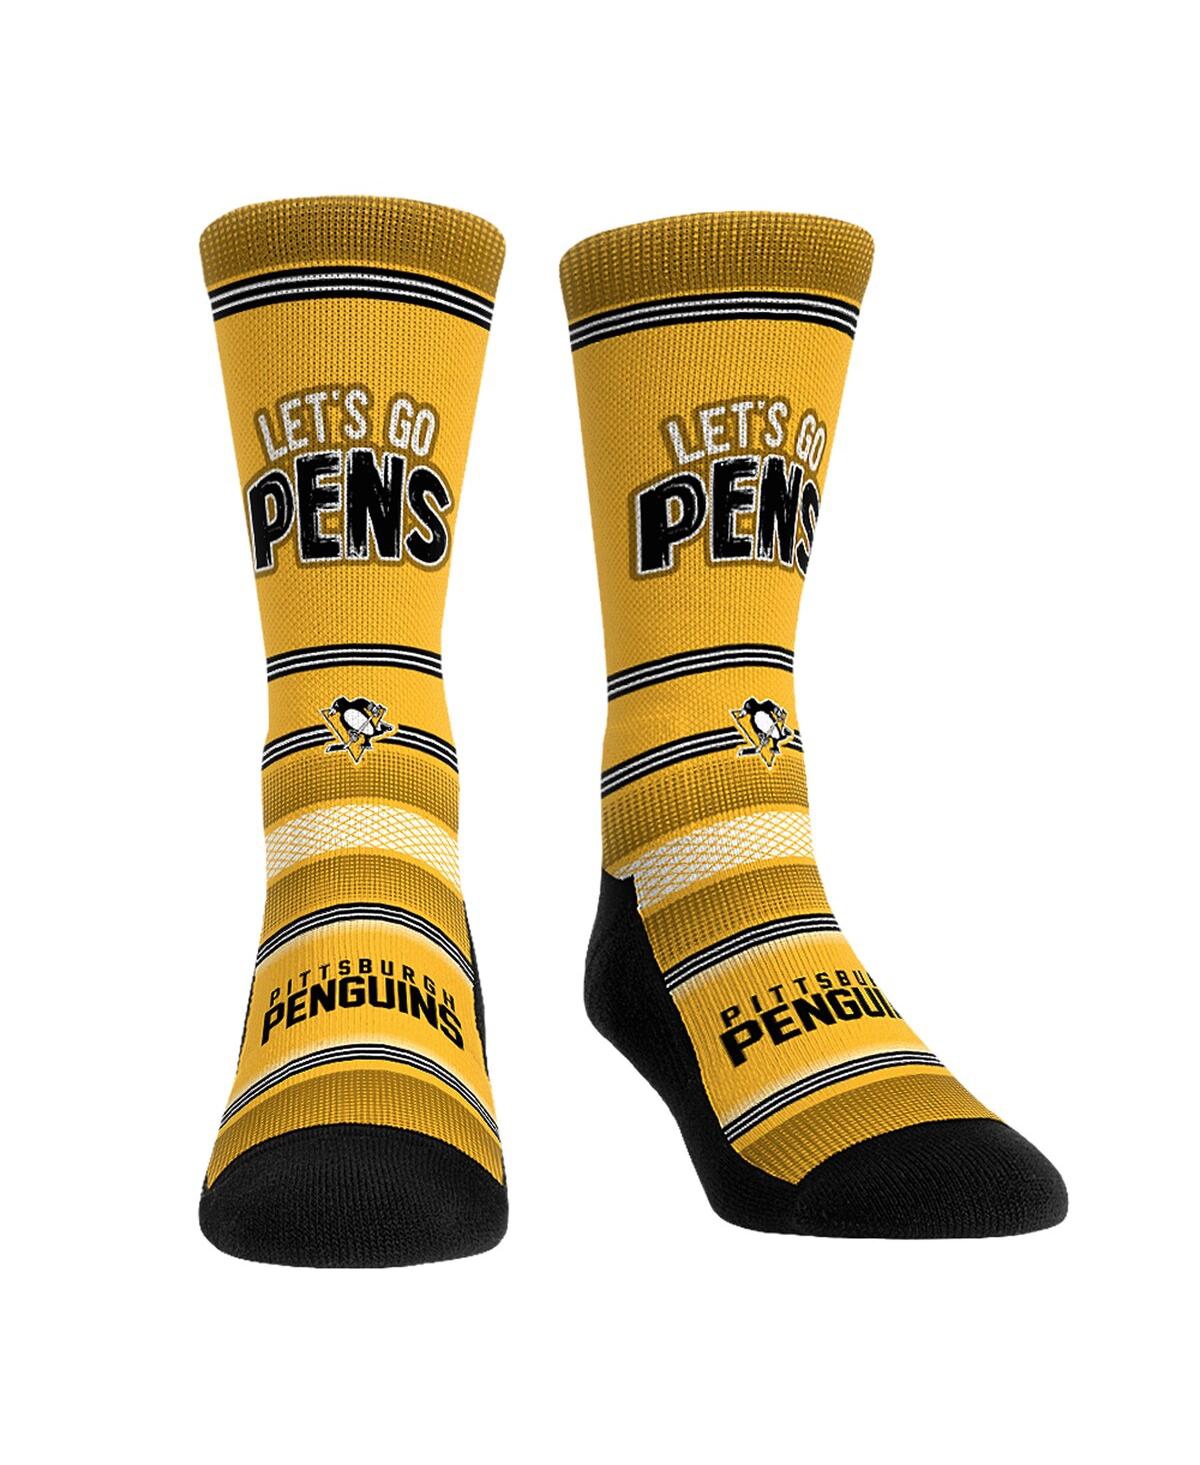 Rock 'em Men's And Women's  Socks Pittsburgh Penguins Team Slogan Crew Socks In Multi